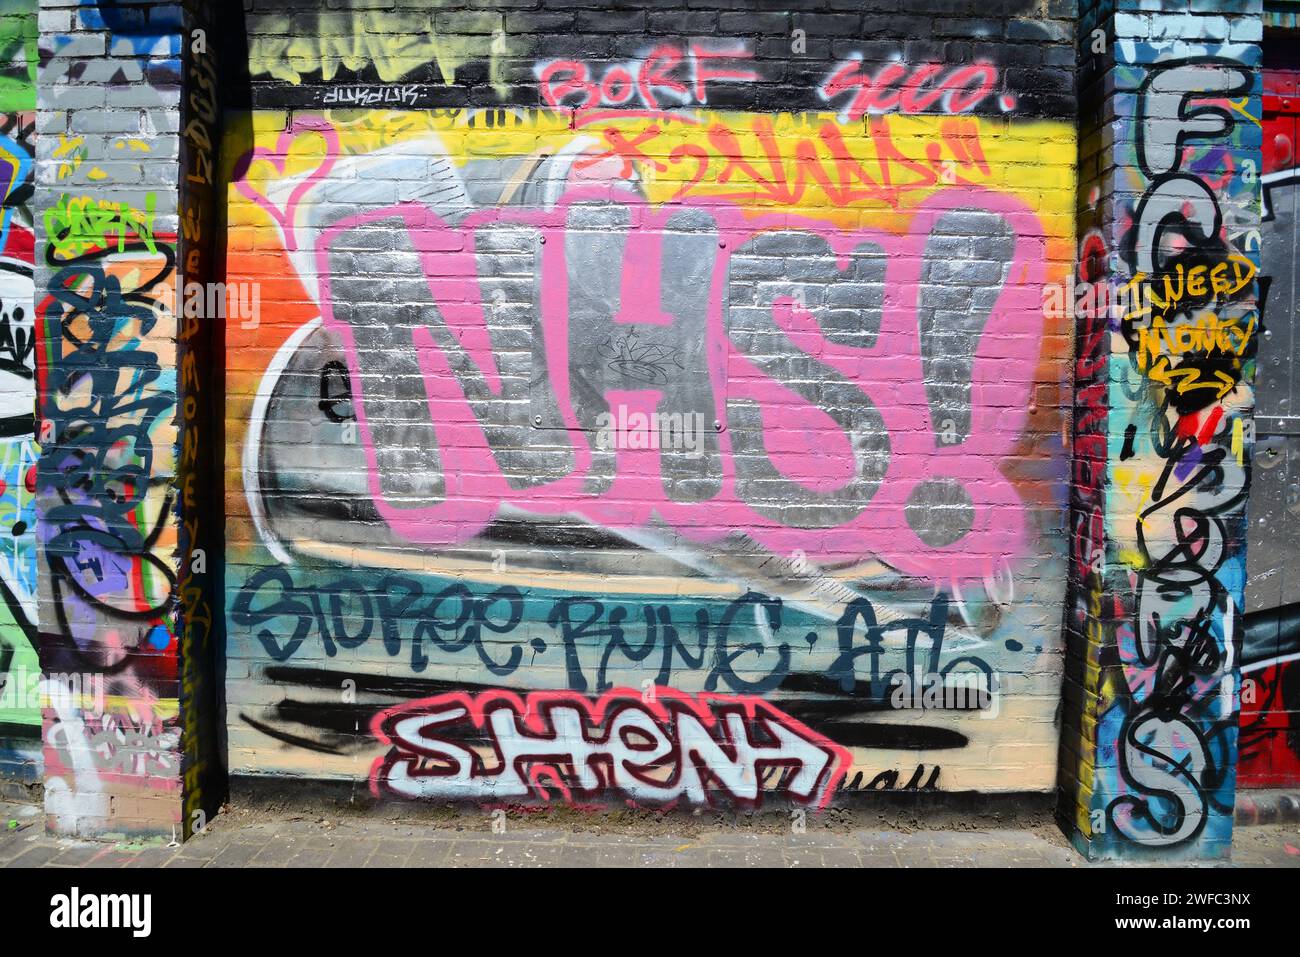 Arte callejero apoyando al NHS durante el Coronavirus London Lockdown en 2020 Foto de stock